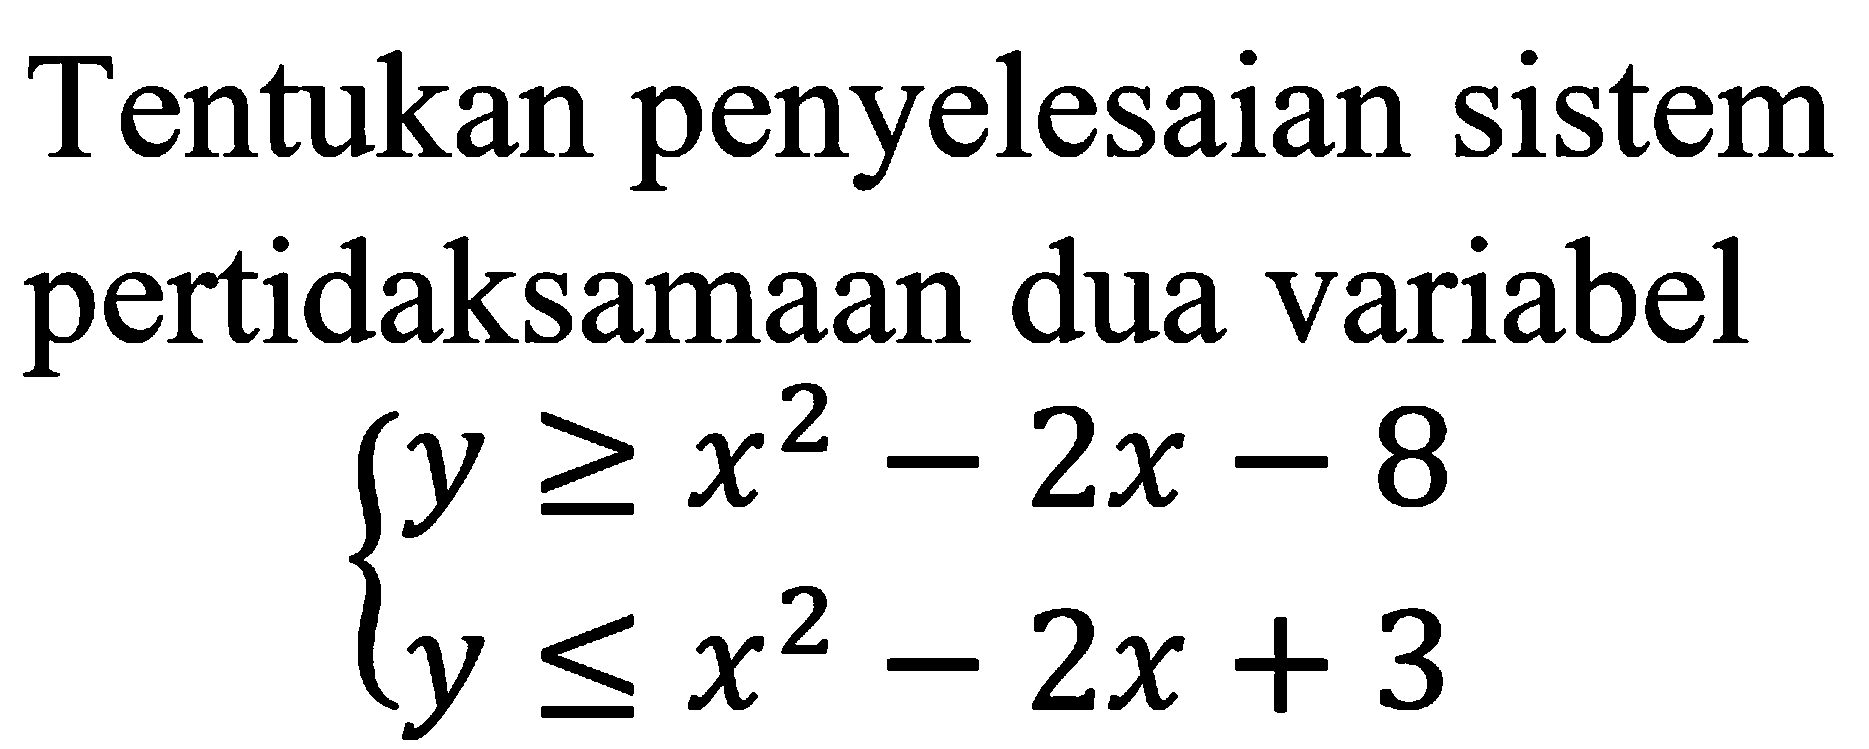 Tentukan penyelesaian sistem pertidaksamaan dua variabel y>=x^2-2x-8 y<=x^2-2x+3